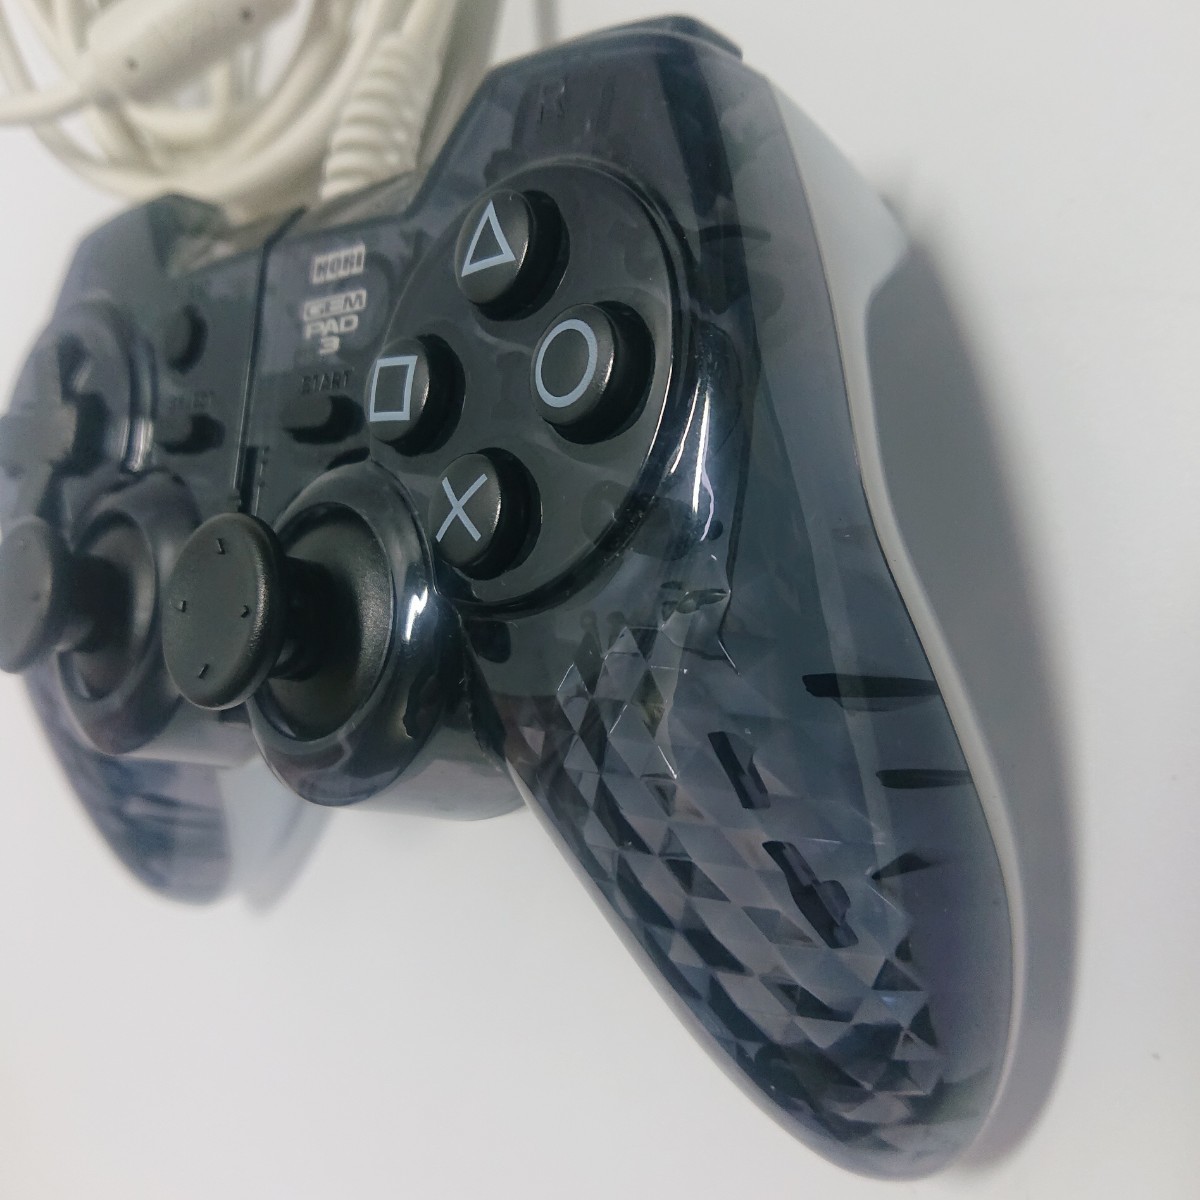 【清掃済み】PS3 コントローラー hori pad3 GEM_画像3